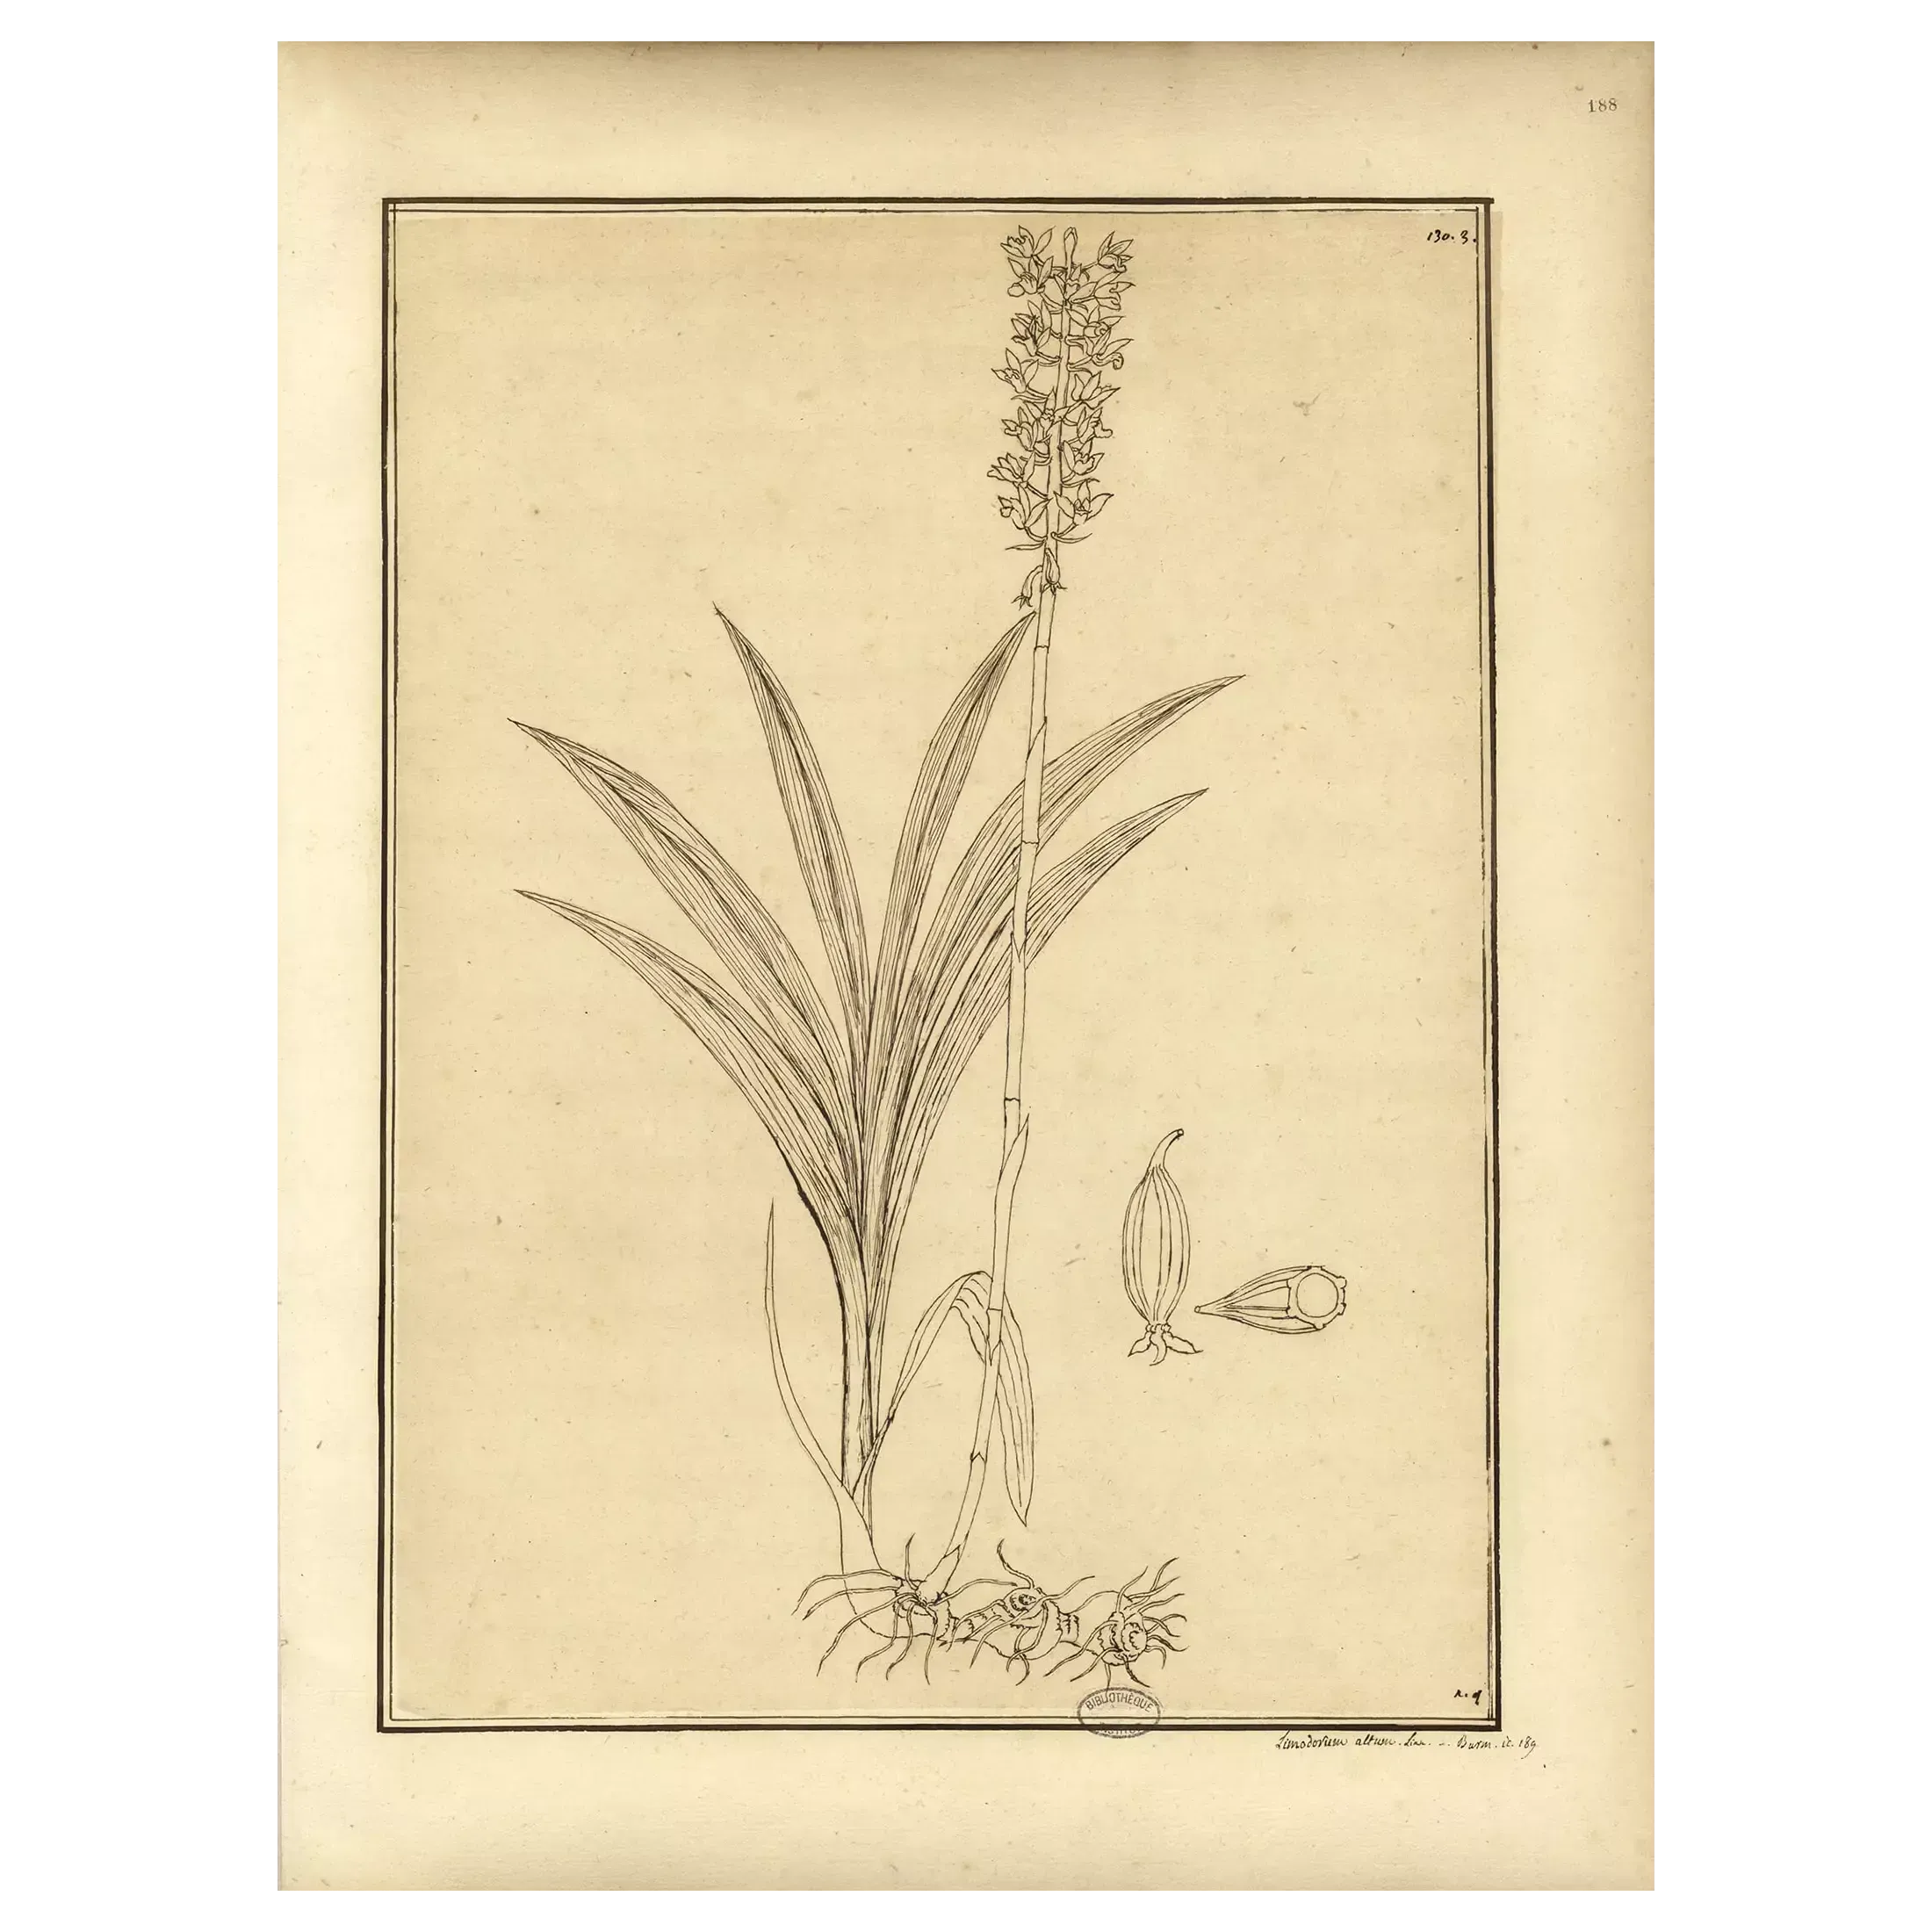 Dessin sur papier avec rehauts à la plume, entre 1687 et 1704, <em>Americanarum plantarum icones</em>, tome 1 f° 188.